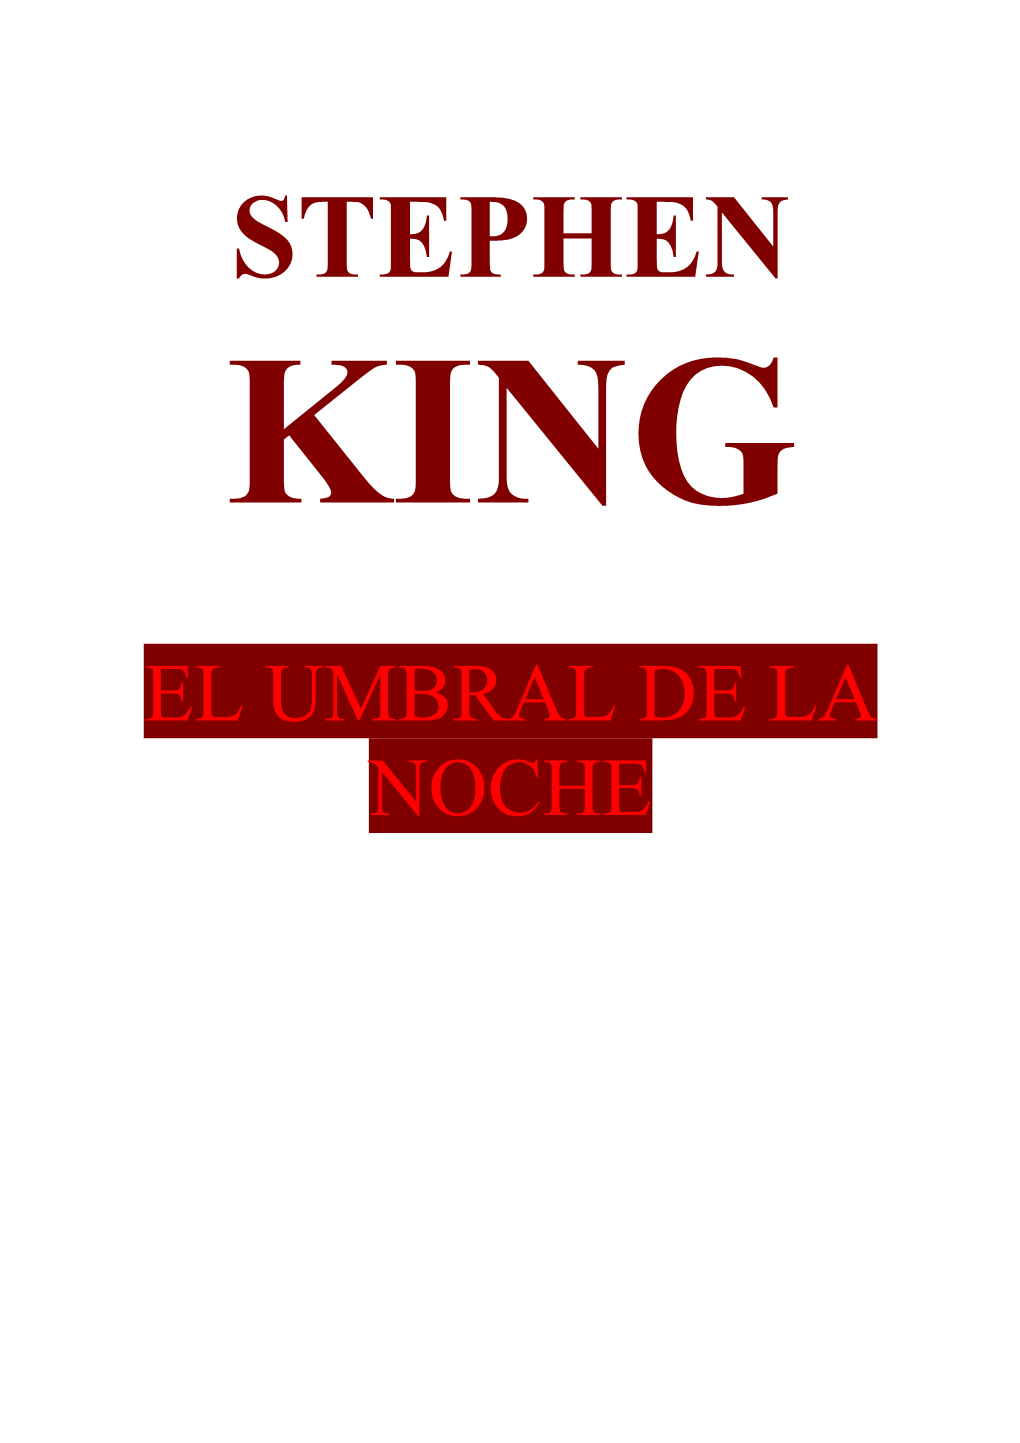 Stephen King Siempre Ha Deseado Escribir, Y Escribe